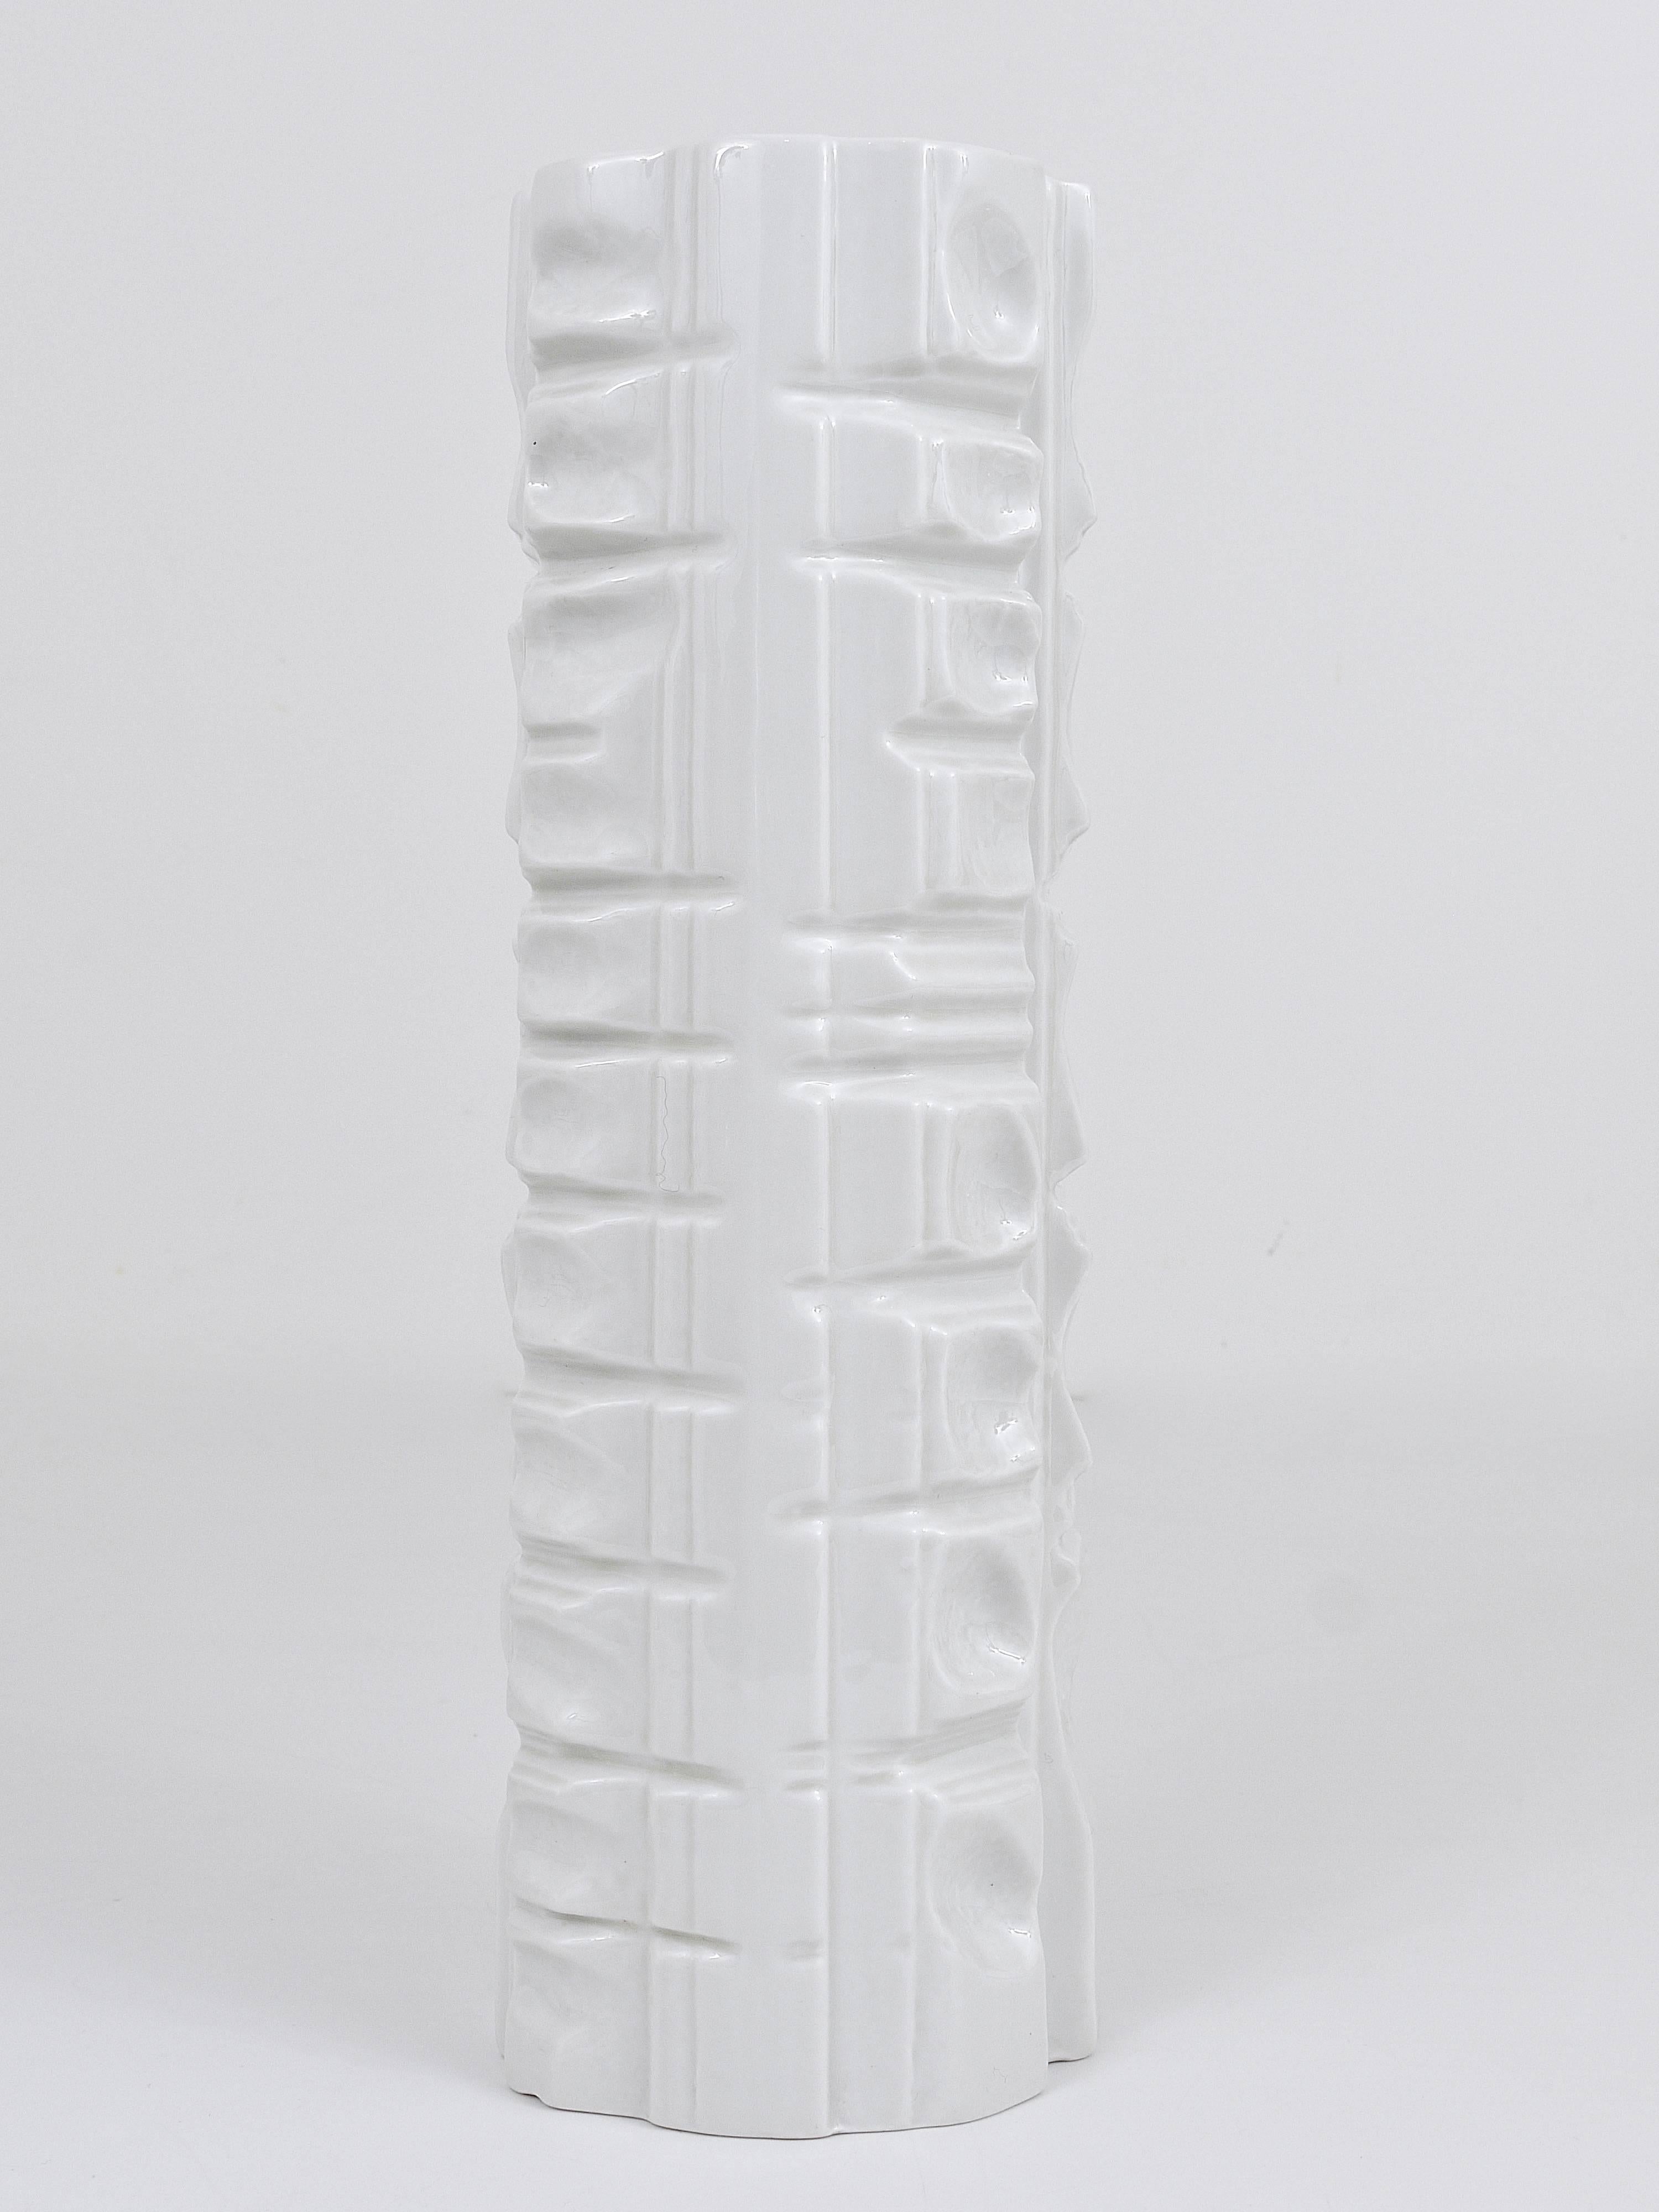 Magnifique vase en porcelaine blanche op art relief à glaçure brillante des années 1960, conçu et exécuté par Rosenthal, Allemagne. En très bon état.